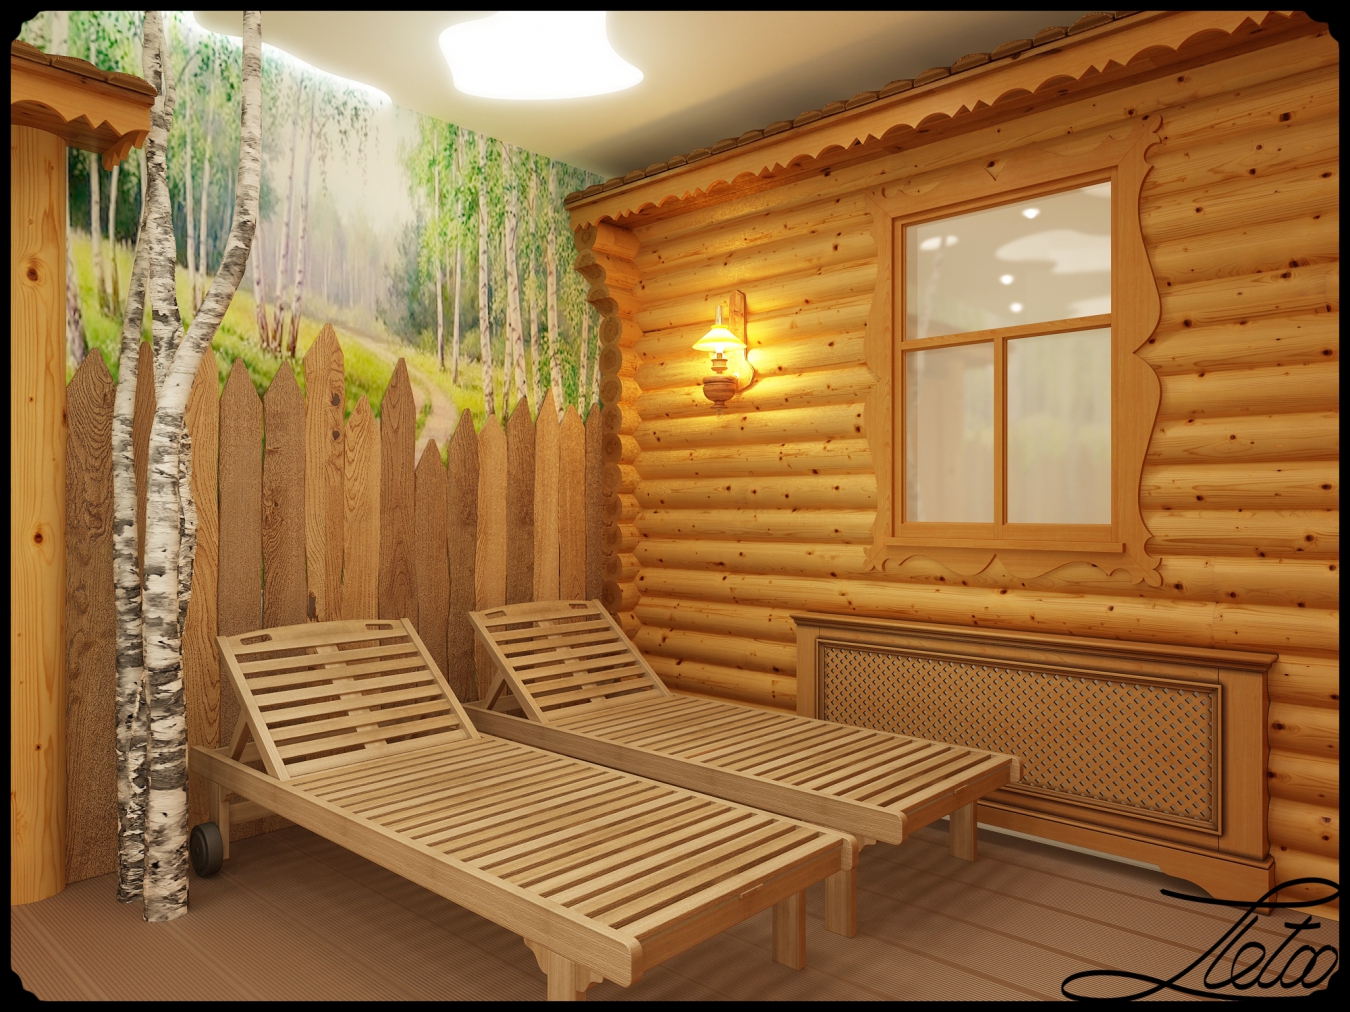 Комната отдыха в бане (86 фото) — дизайн интерьера помещения для отдыха внутри бани, отделка строения со спальней на втором этаже на даче